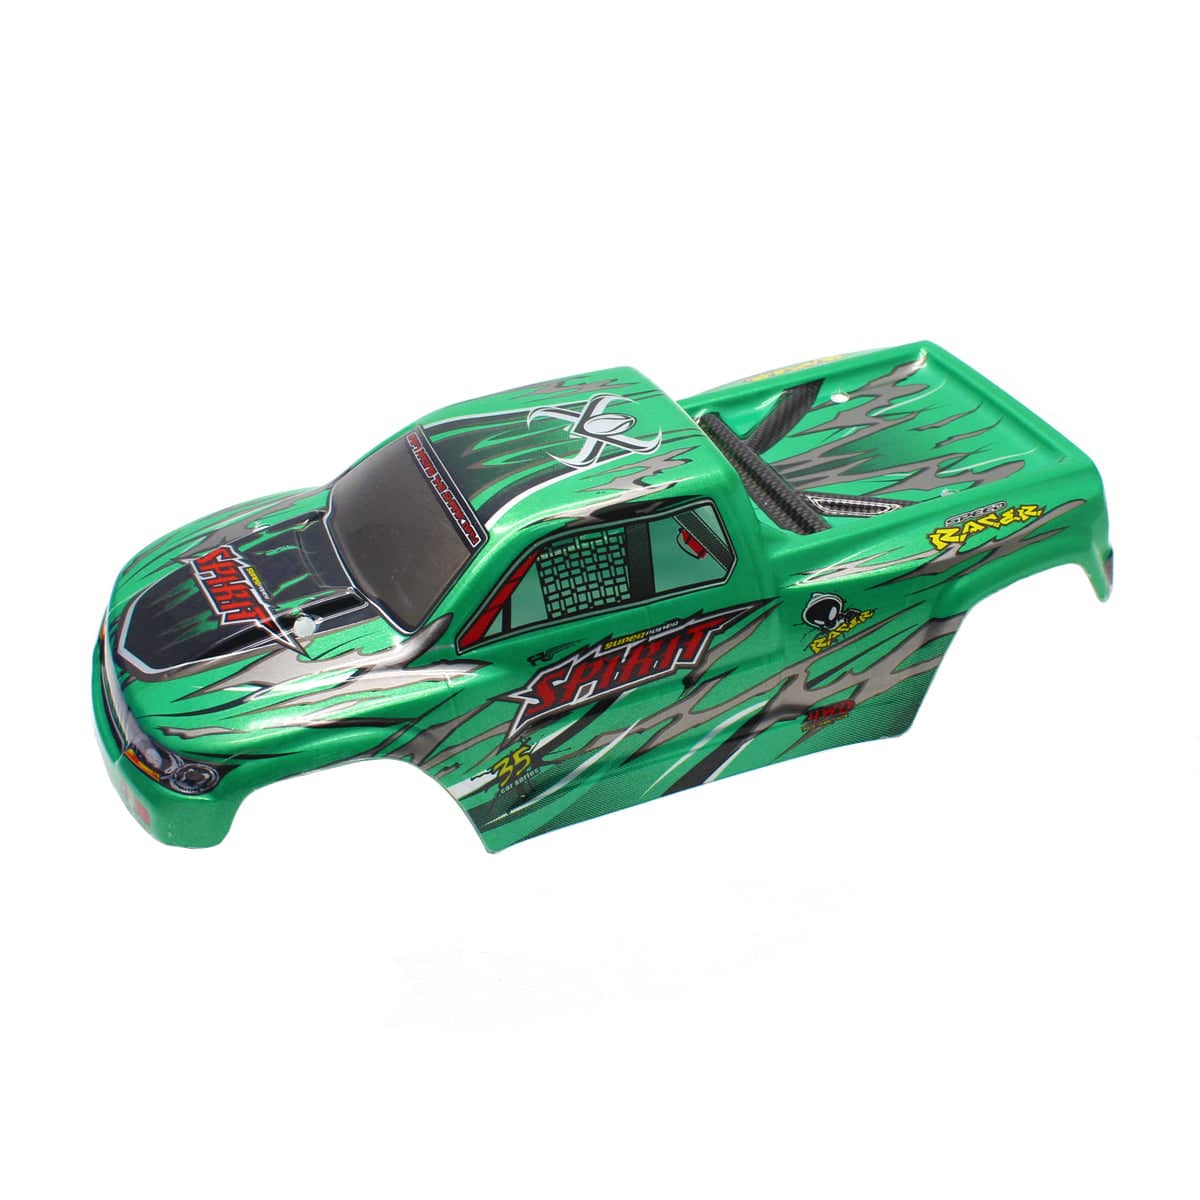 HOSIM RC Car Car Shell Body 1:16 Scale 30-SJ03 for 9130 RC Car Green